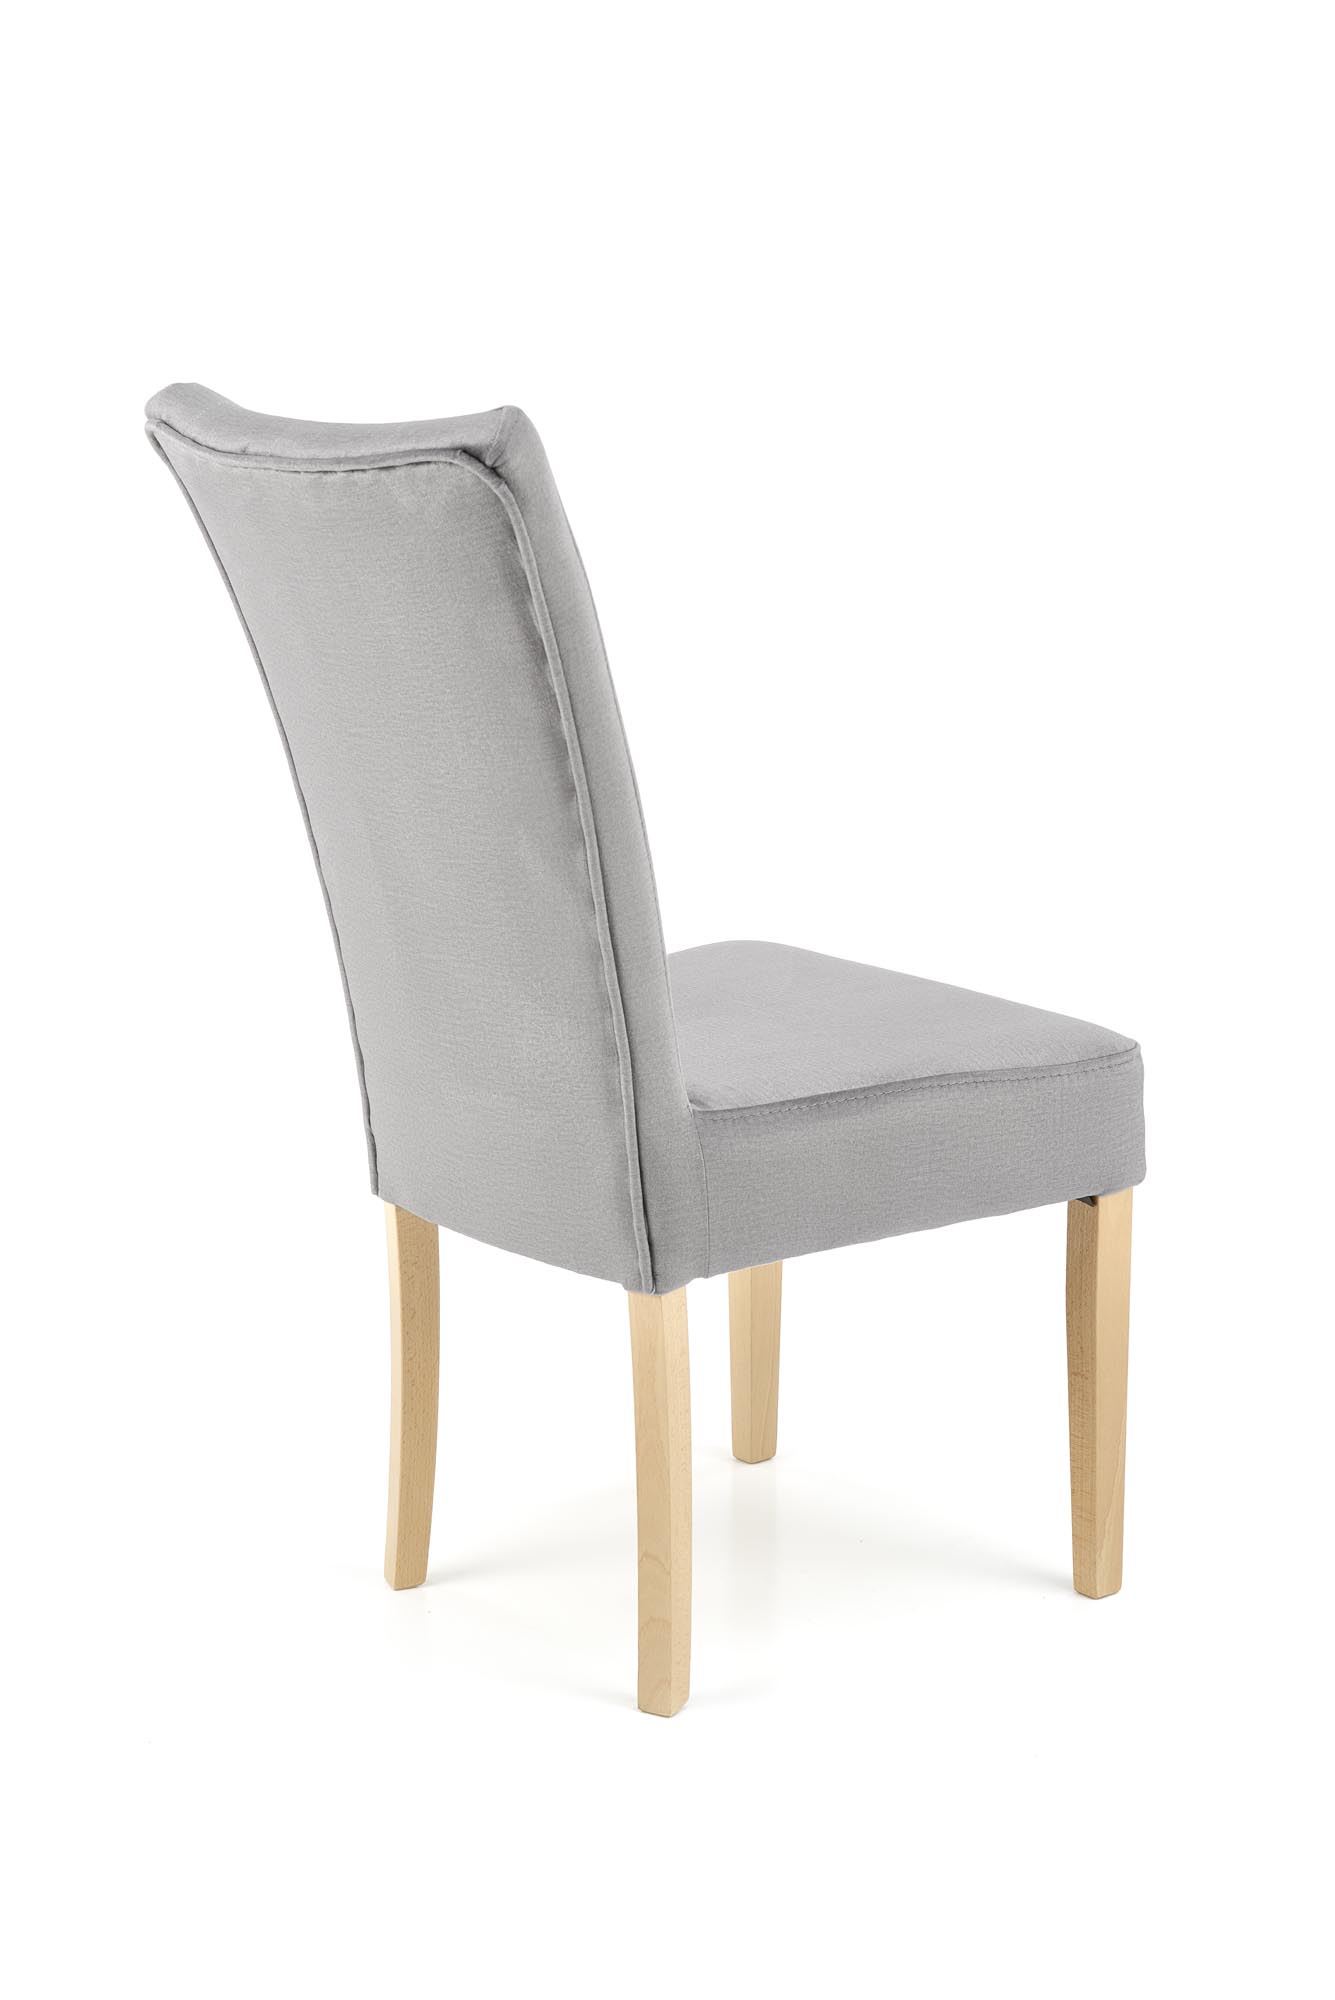 Krzesło tapicerowane Vermont - dąb miodowy / popiel krzesło tapicerowane vermont - dąb miodowy /popiel